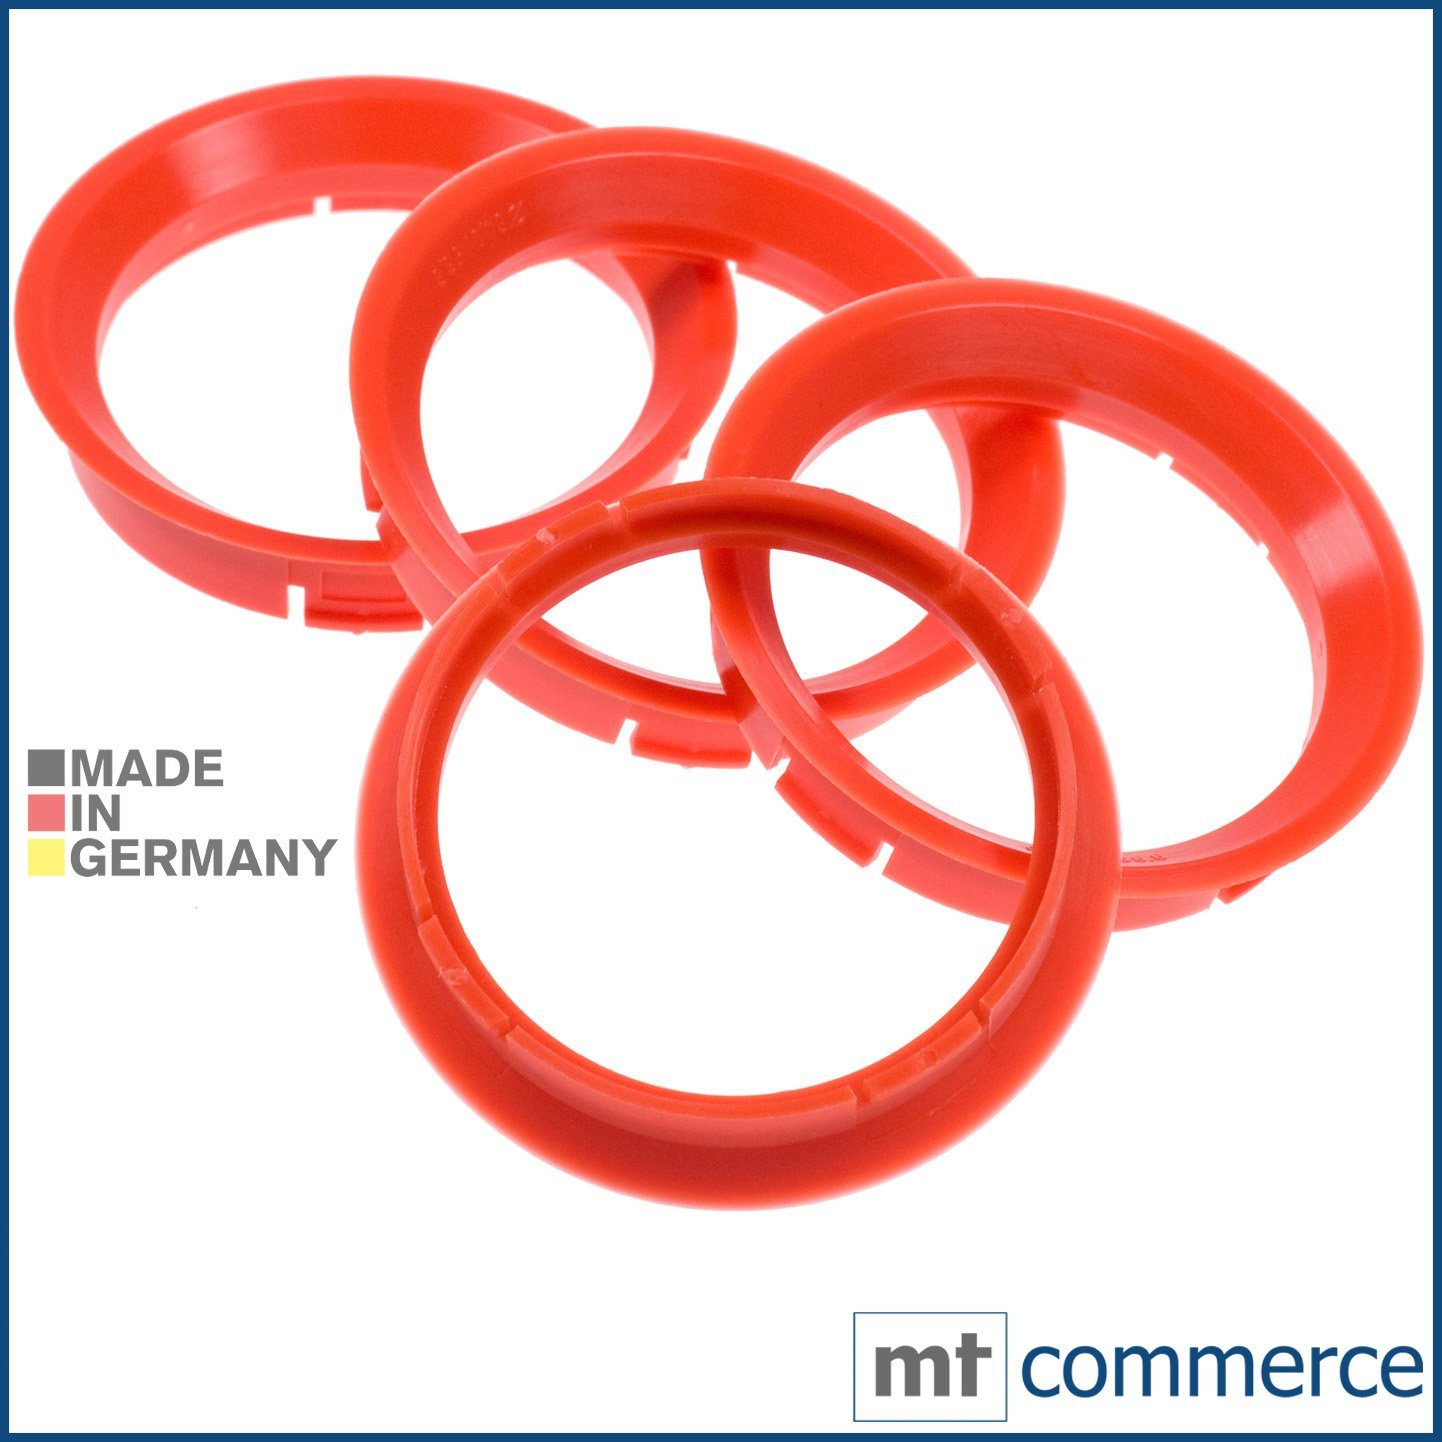 RKC Reifenstift 4X Zentrierringe blutorange Felgen Ringe Made in Germany, Maße: 64,0 x 56,6 mm | Reifenstifte